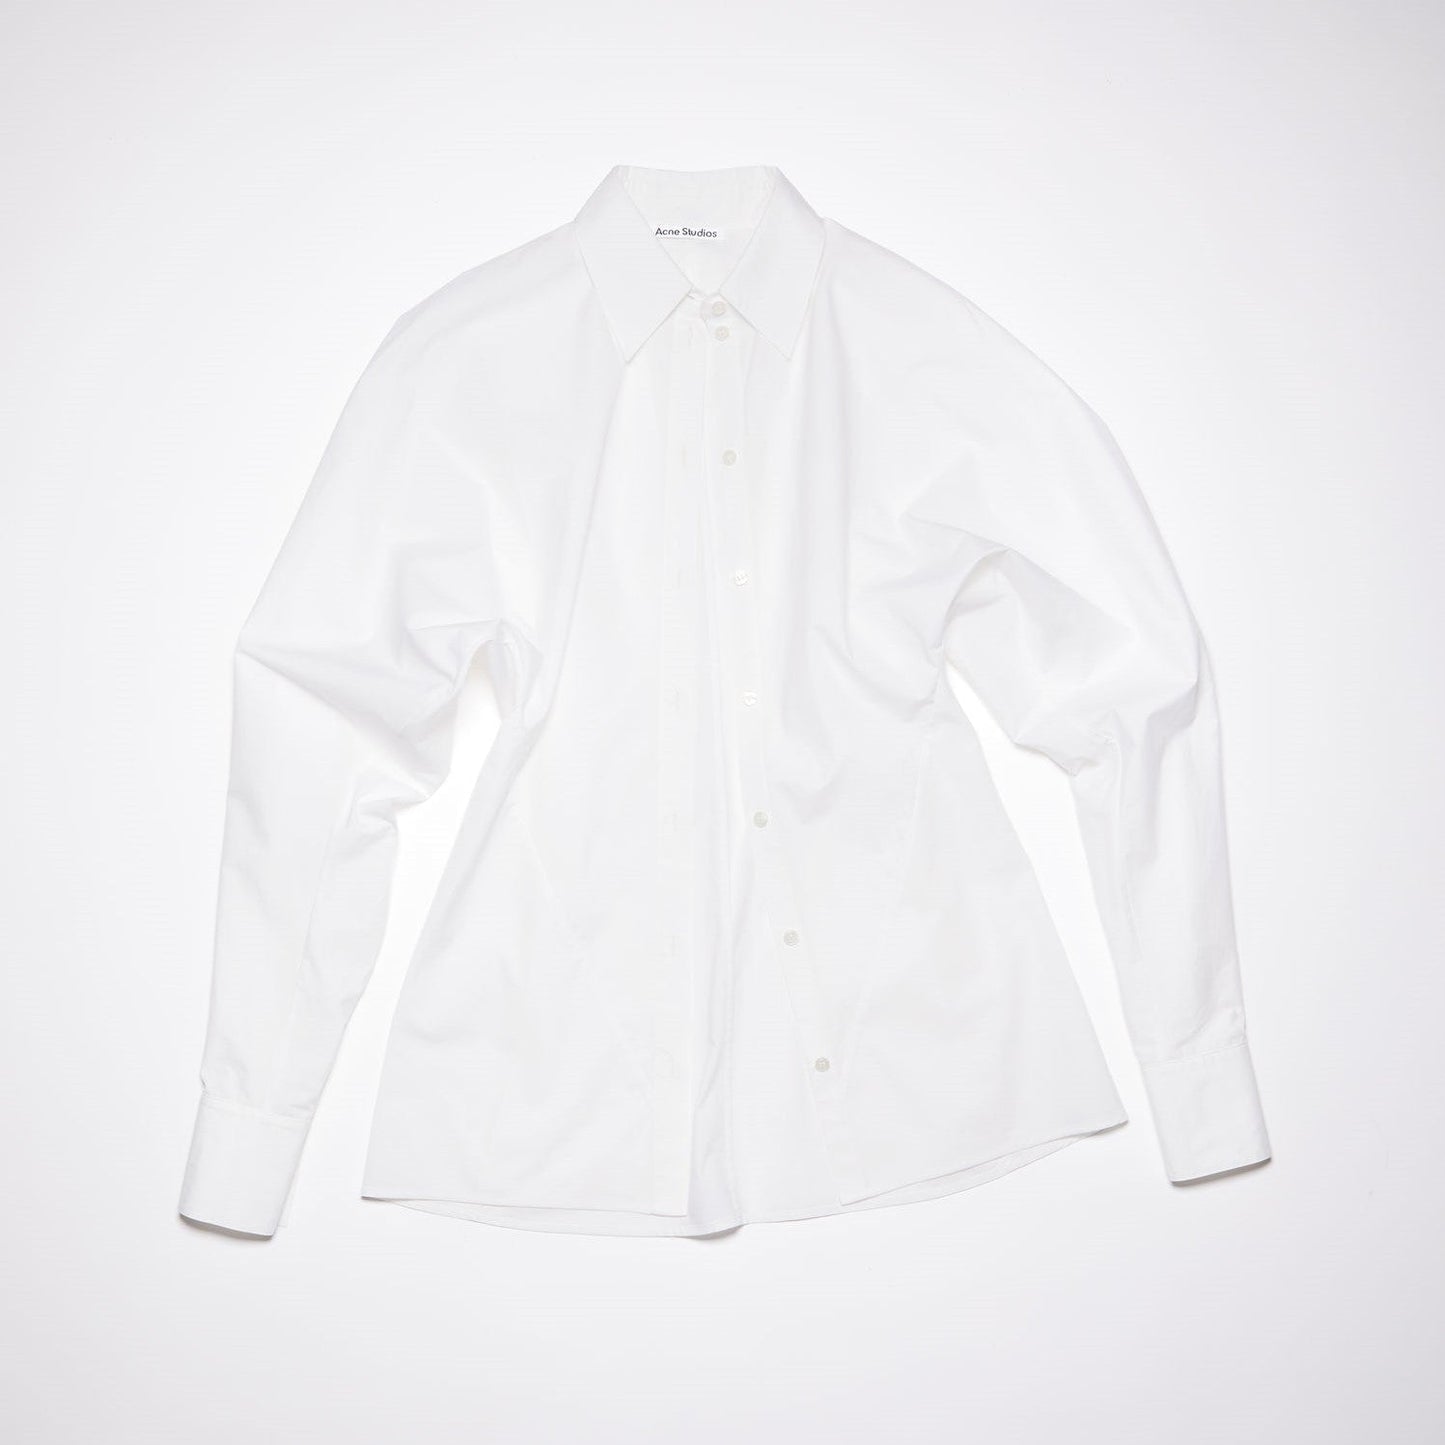 
                  
                    ドルマンボタンシャツ -WHITE
                  
                